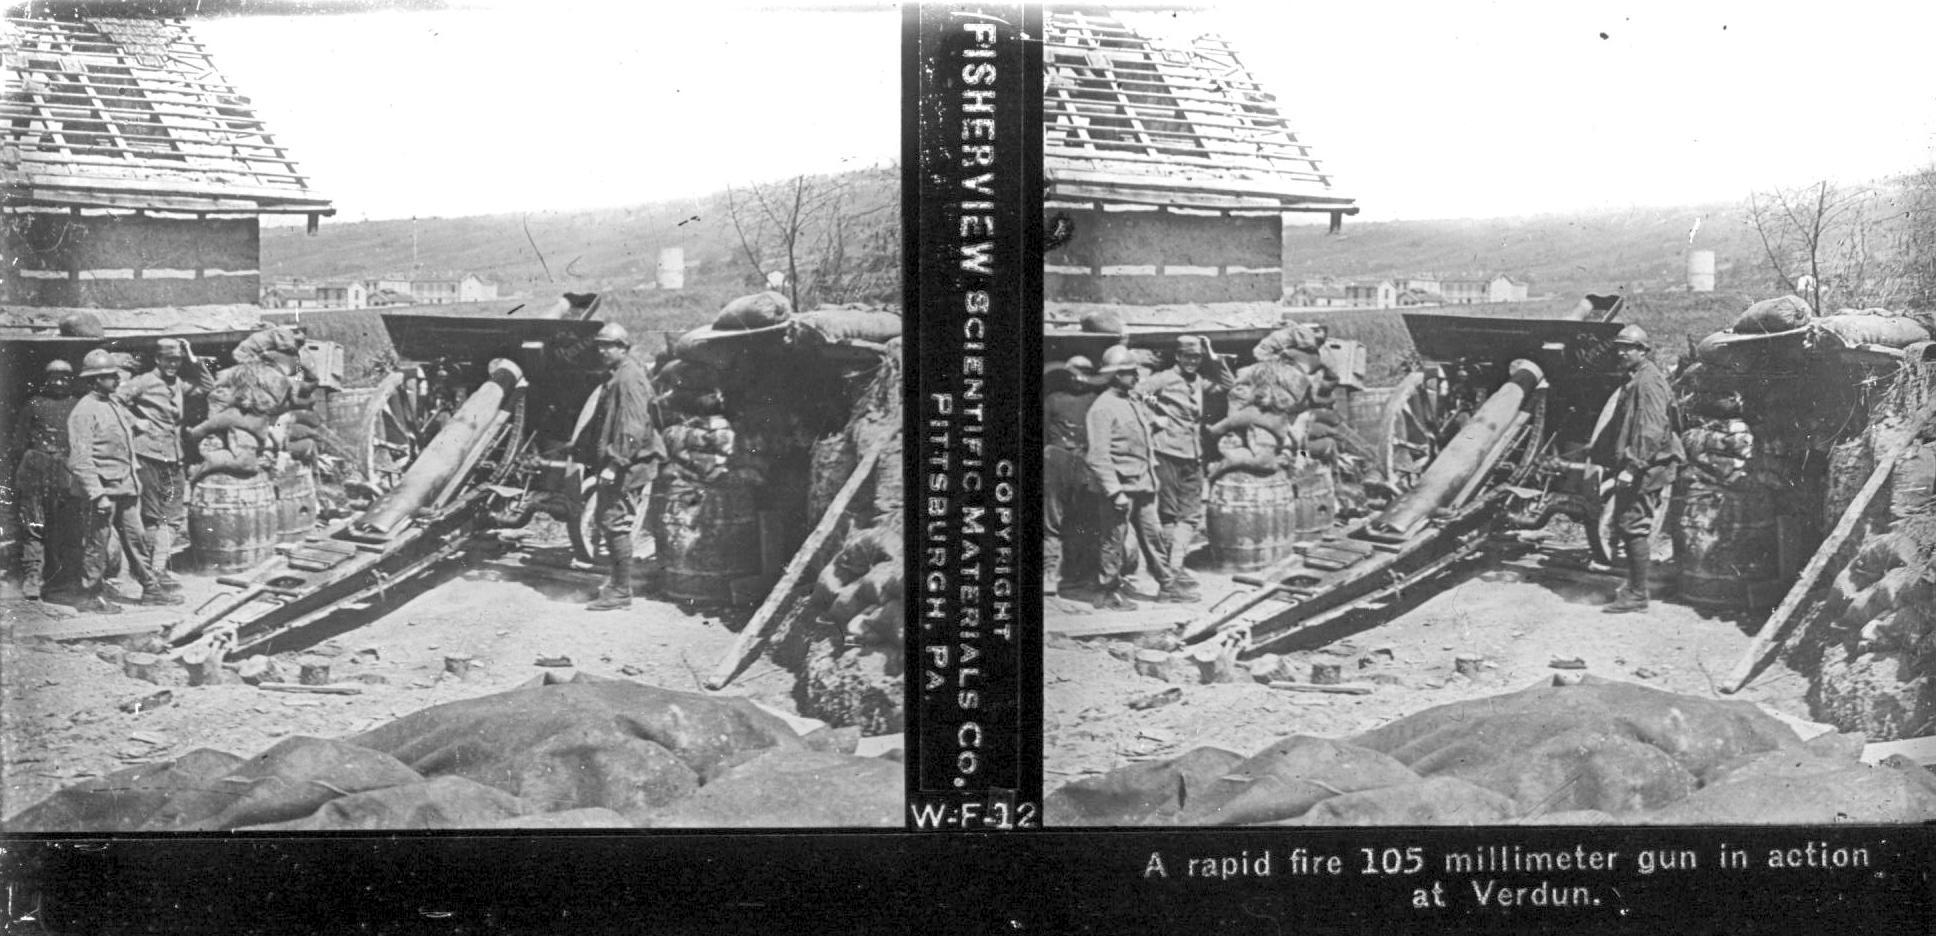 A rapid fire 105 millimeter gun in action at Verdun